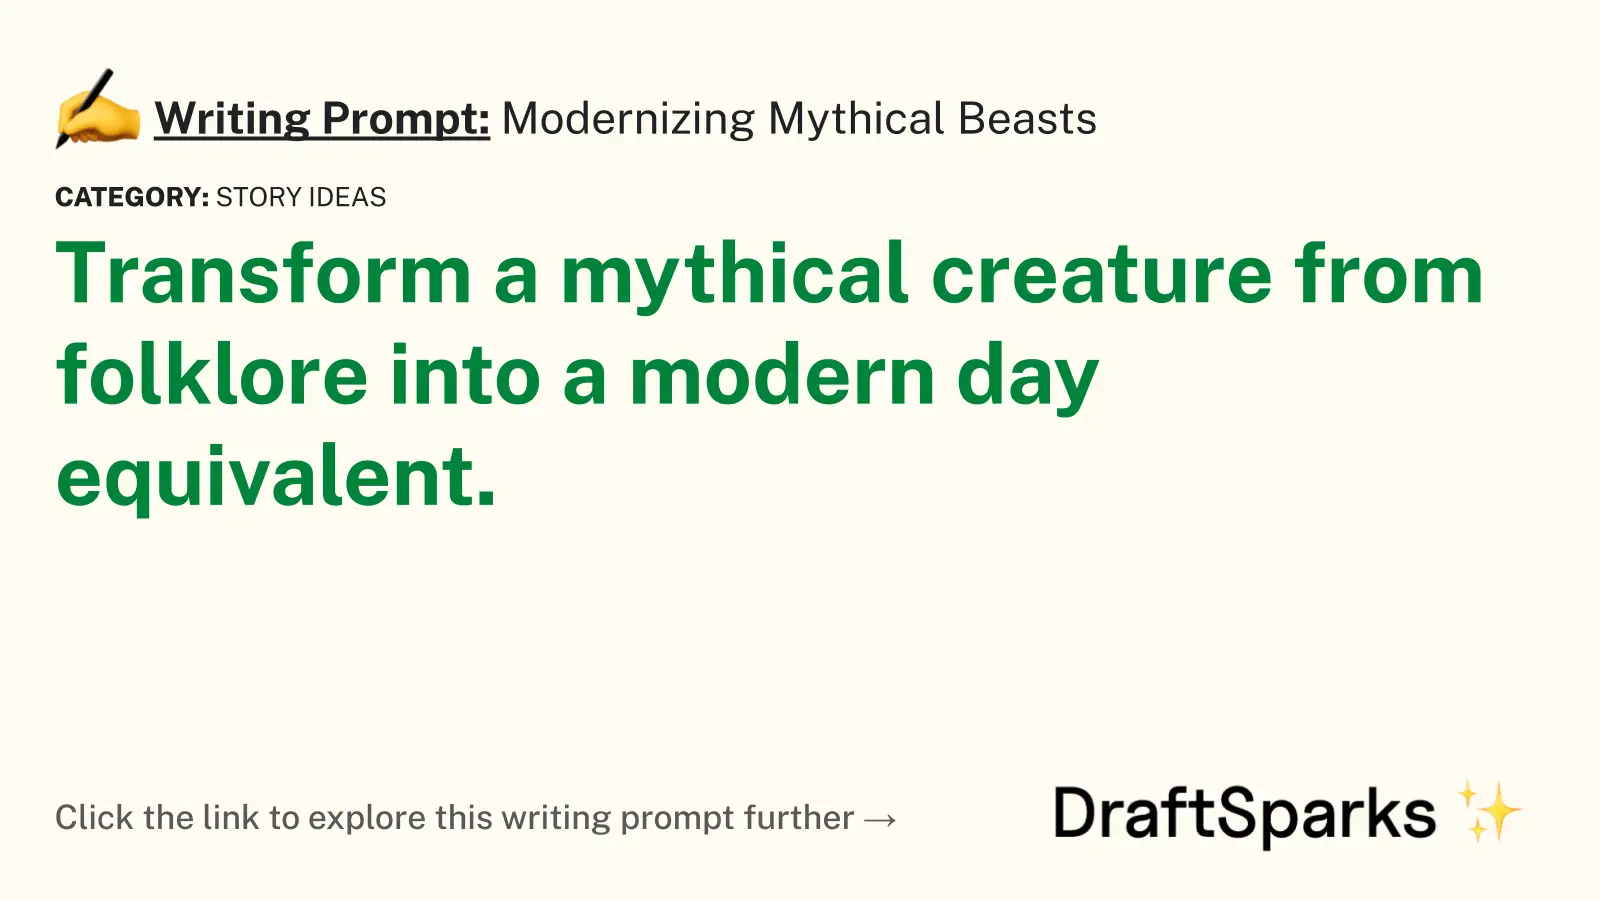 Modernizing Mythical Beasts